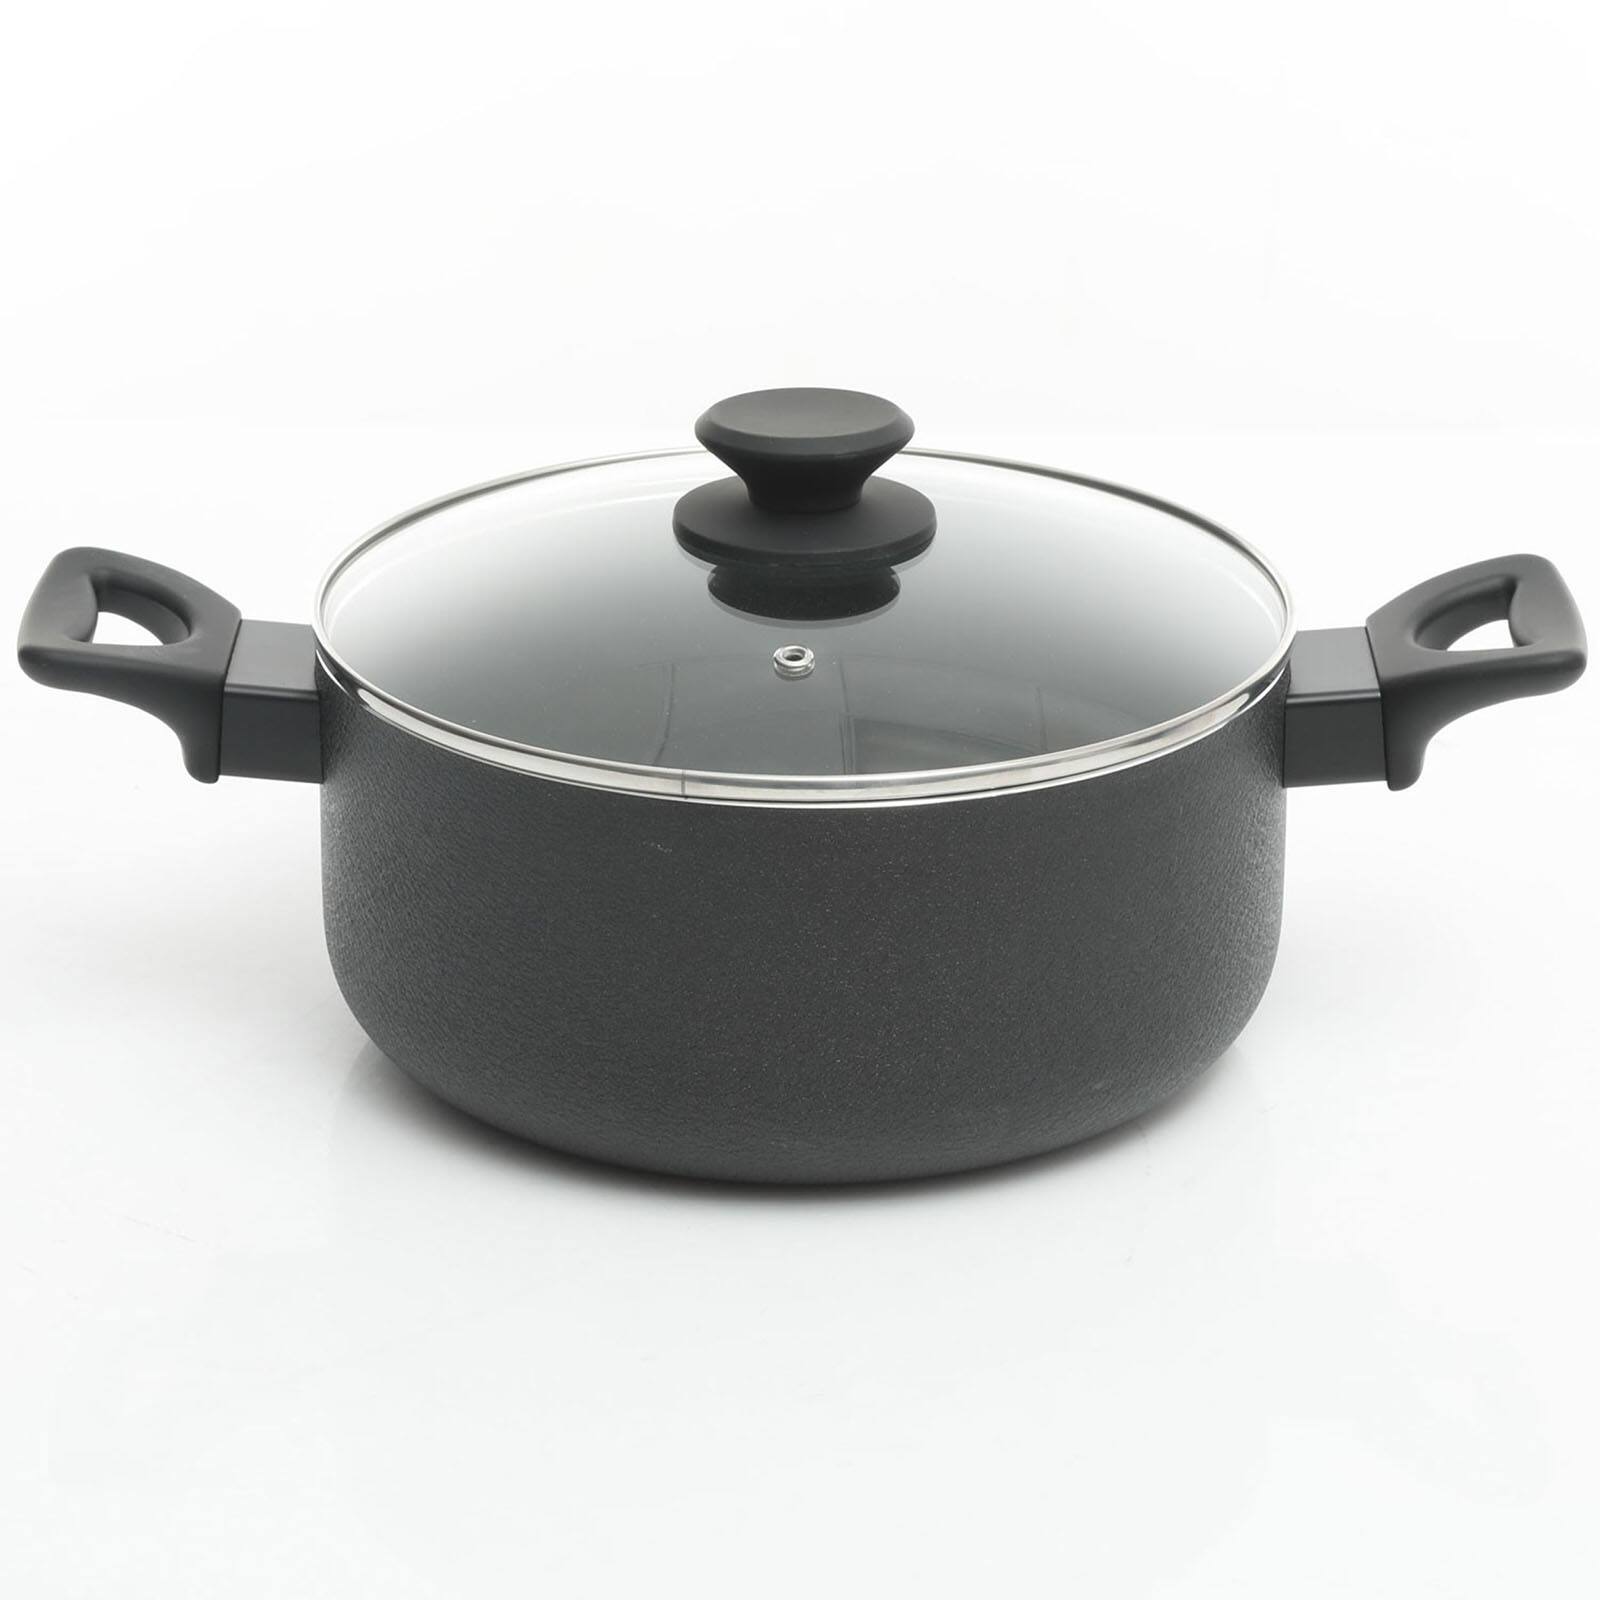 Oster Ashford 10-Piece Aluminum Non-Stick Cookware Set (Black) - 20011269